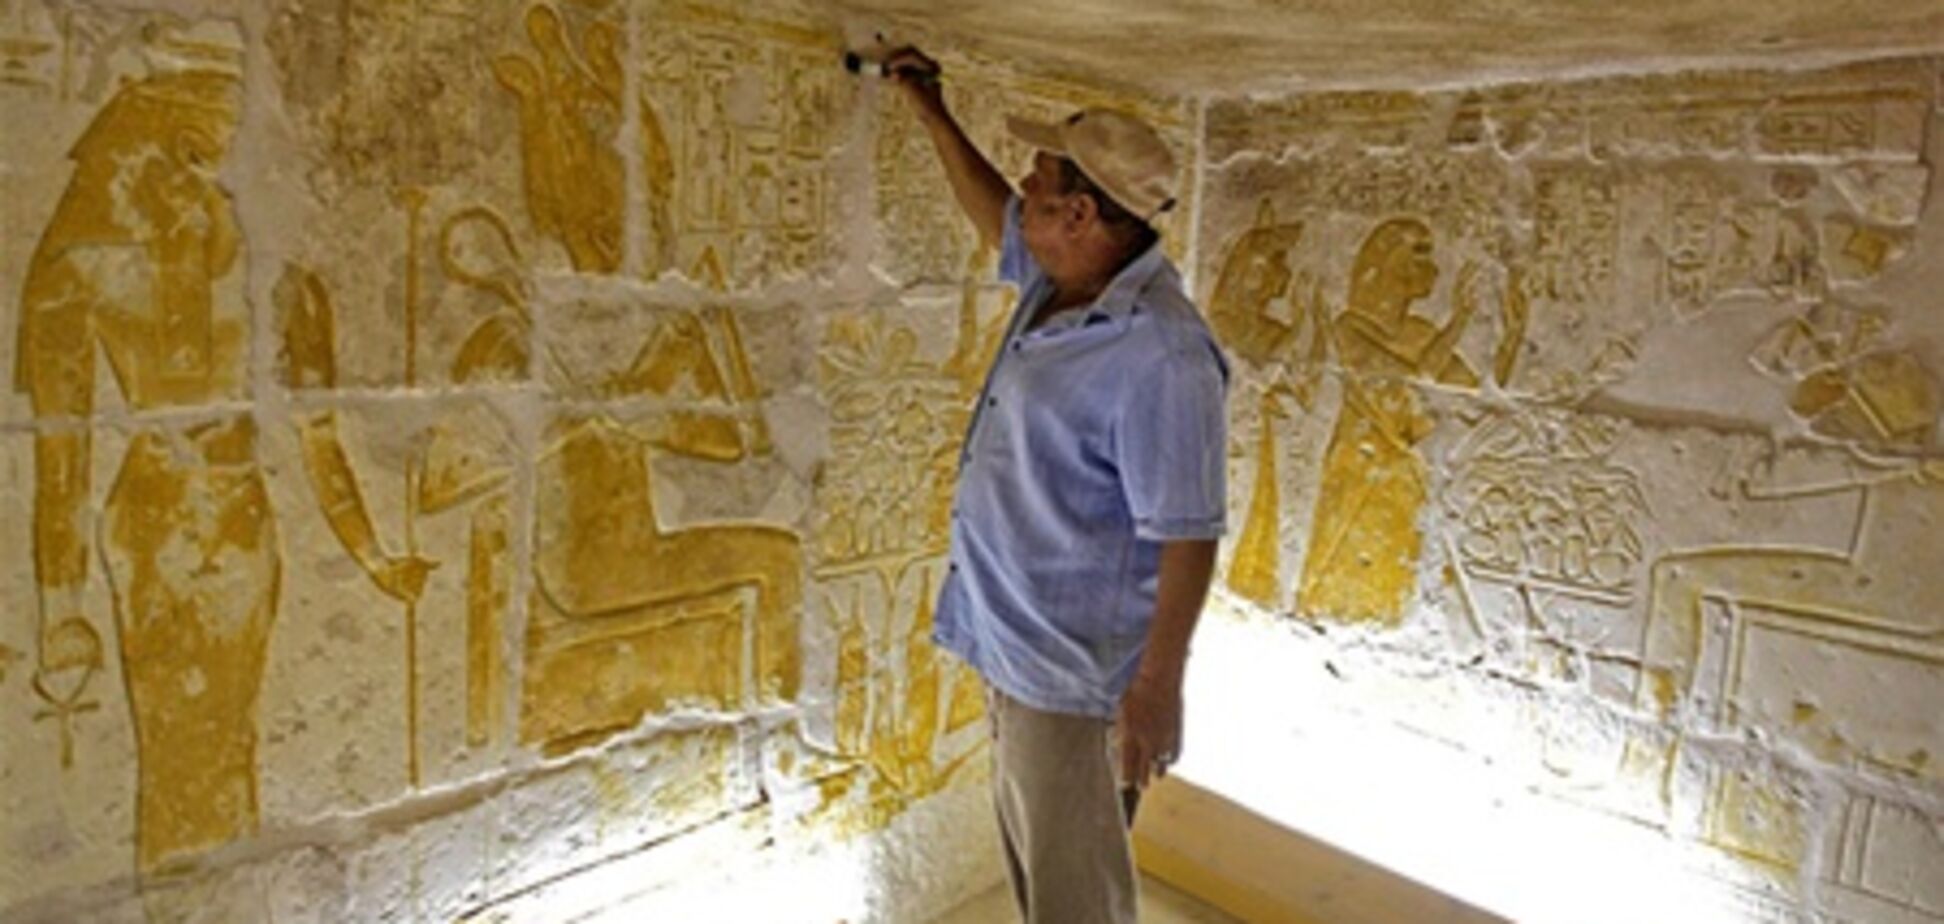 Біля піраміди Хеопса розкрили саркофаг з 'сонячною турою'